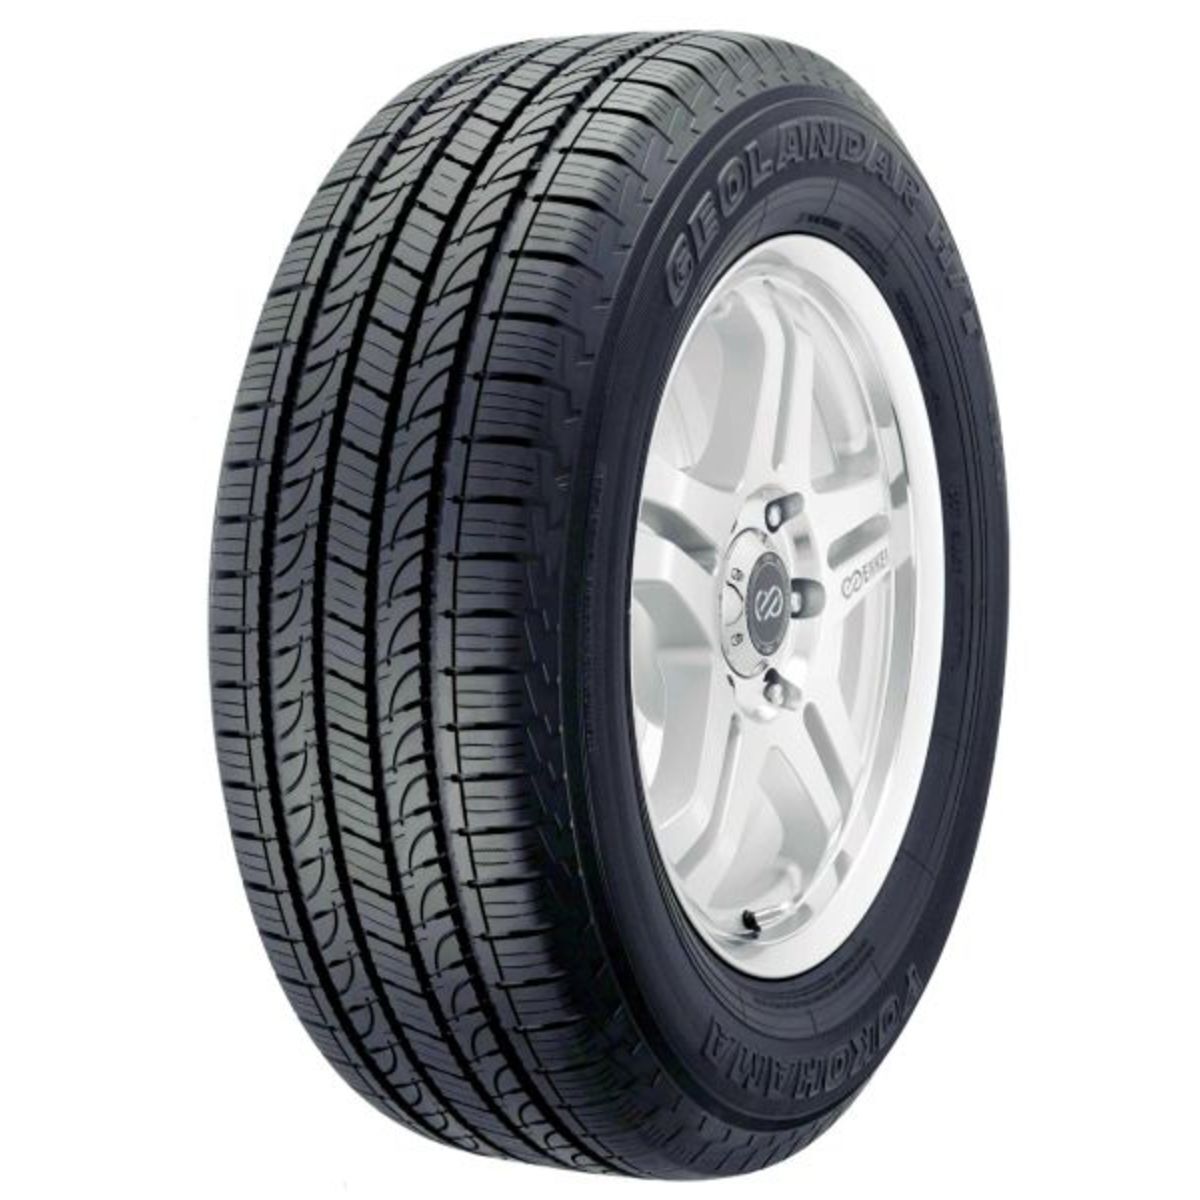 Neumáticos de verano YOKOHAMA Geolandar H/T G056 215/70R15 98H